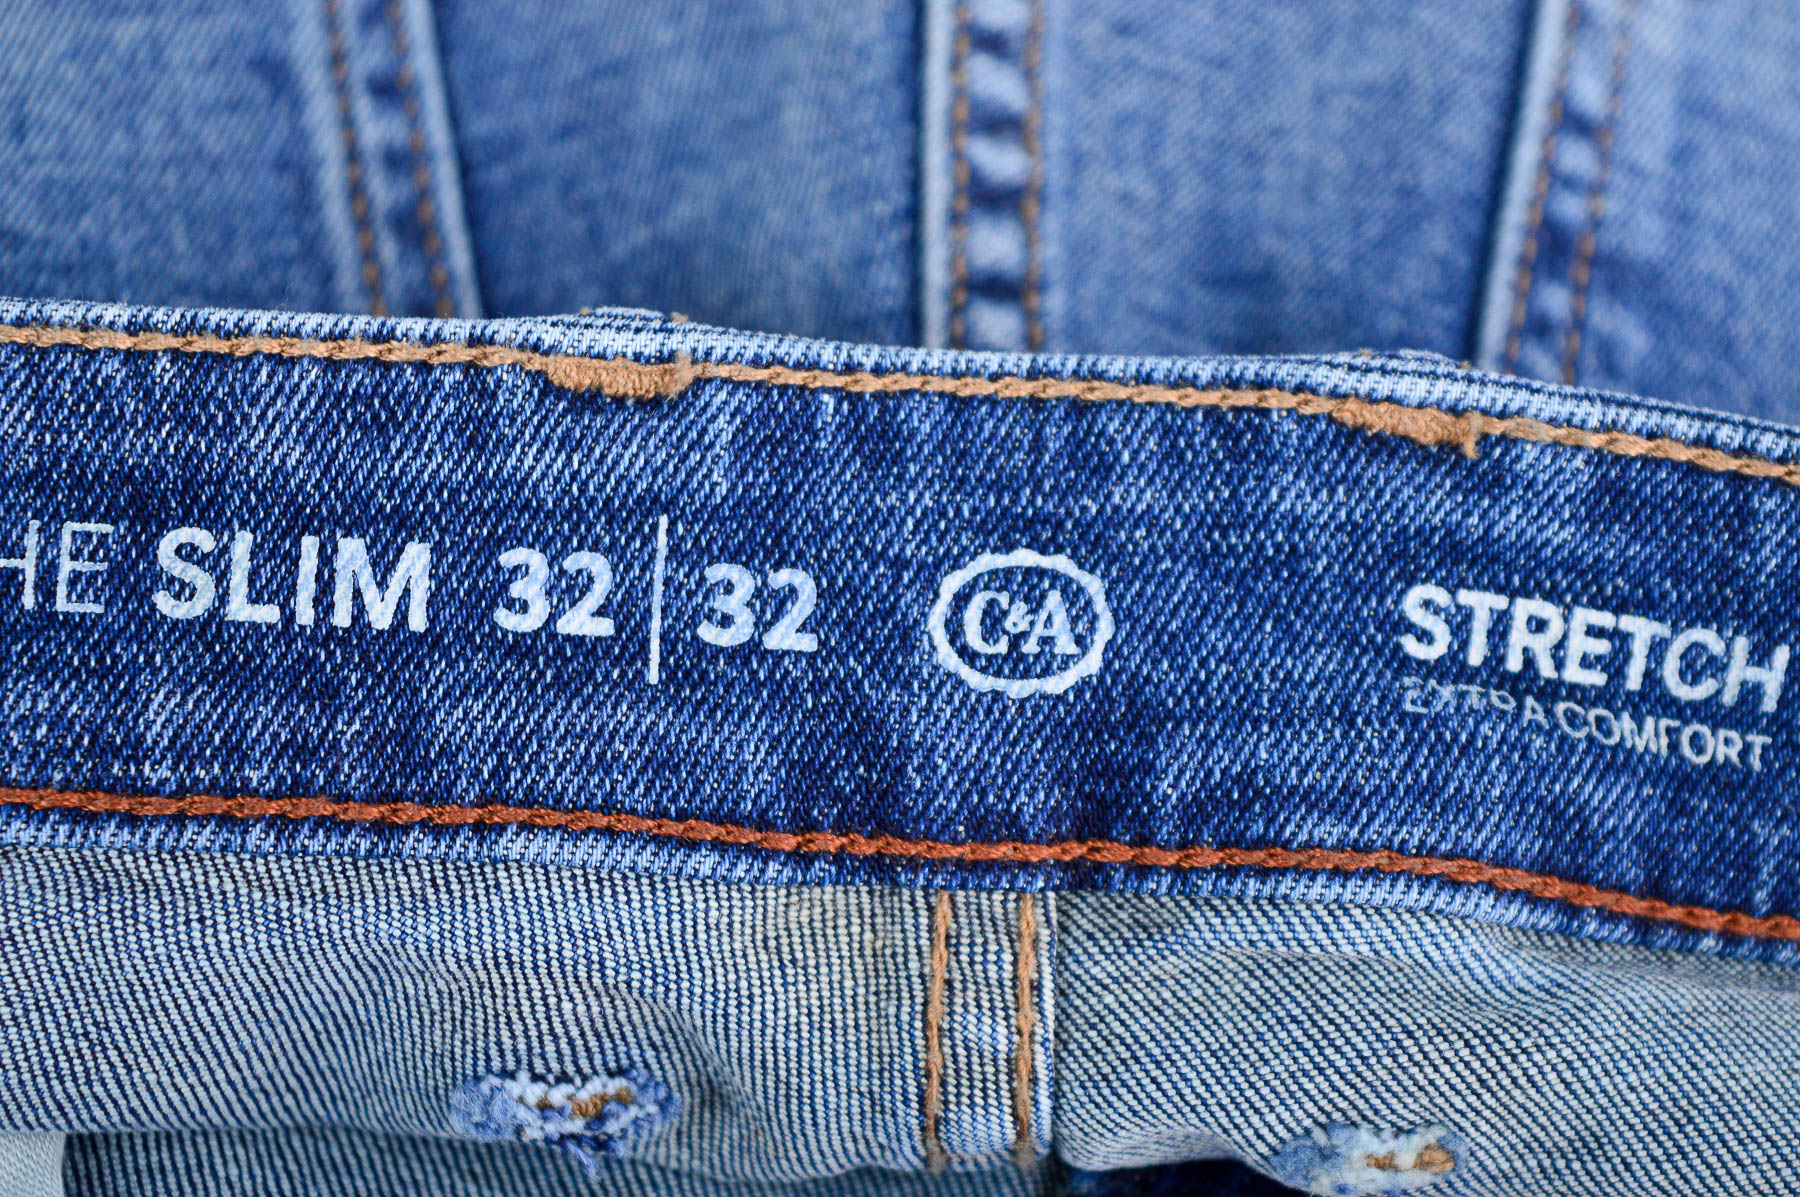 Men's jeans - C&A - 2